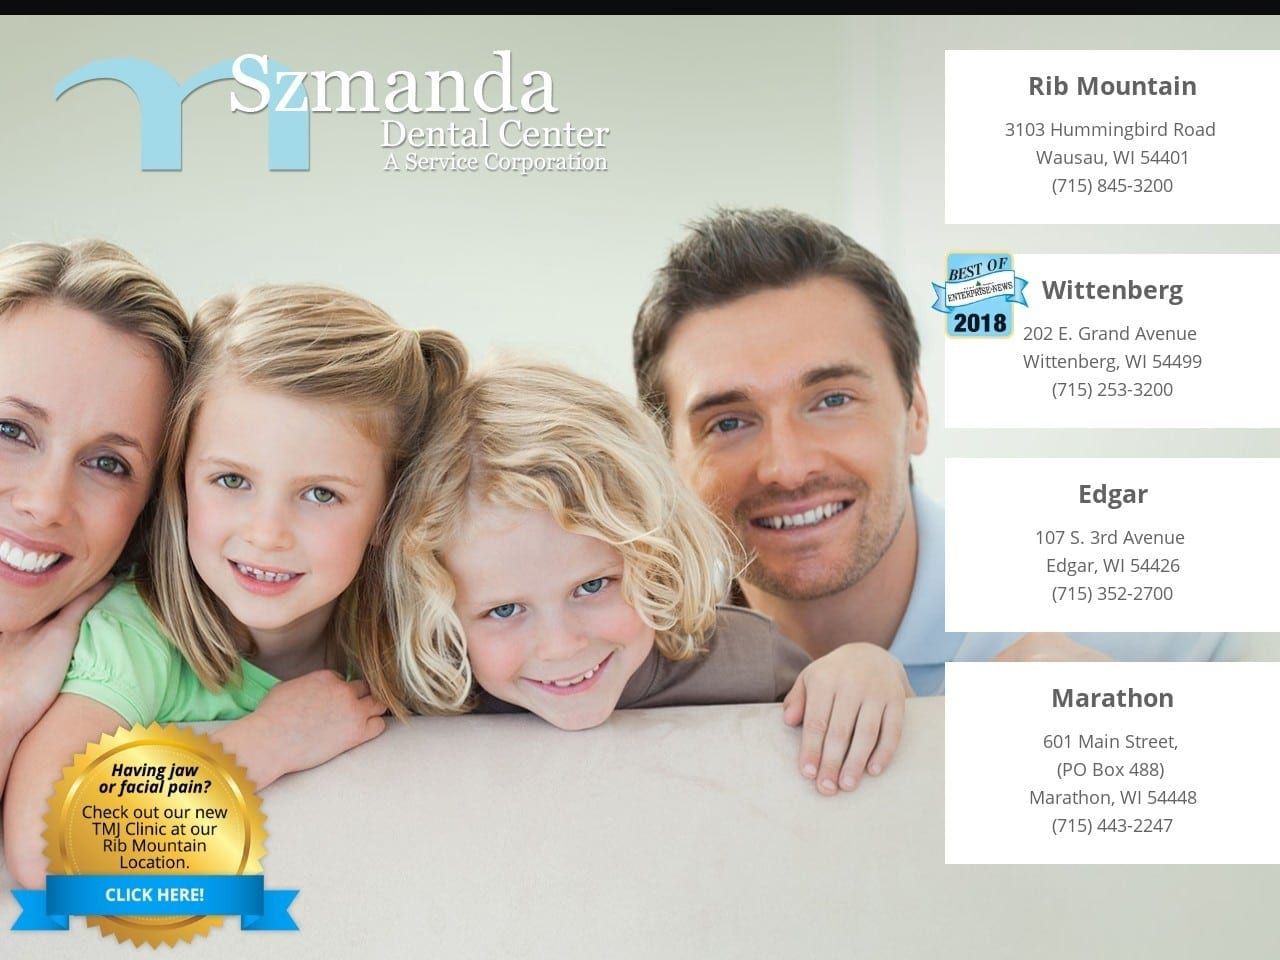 Szmanda Dental Center Website Screenshot from szmandadental.com